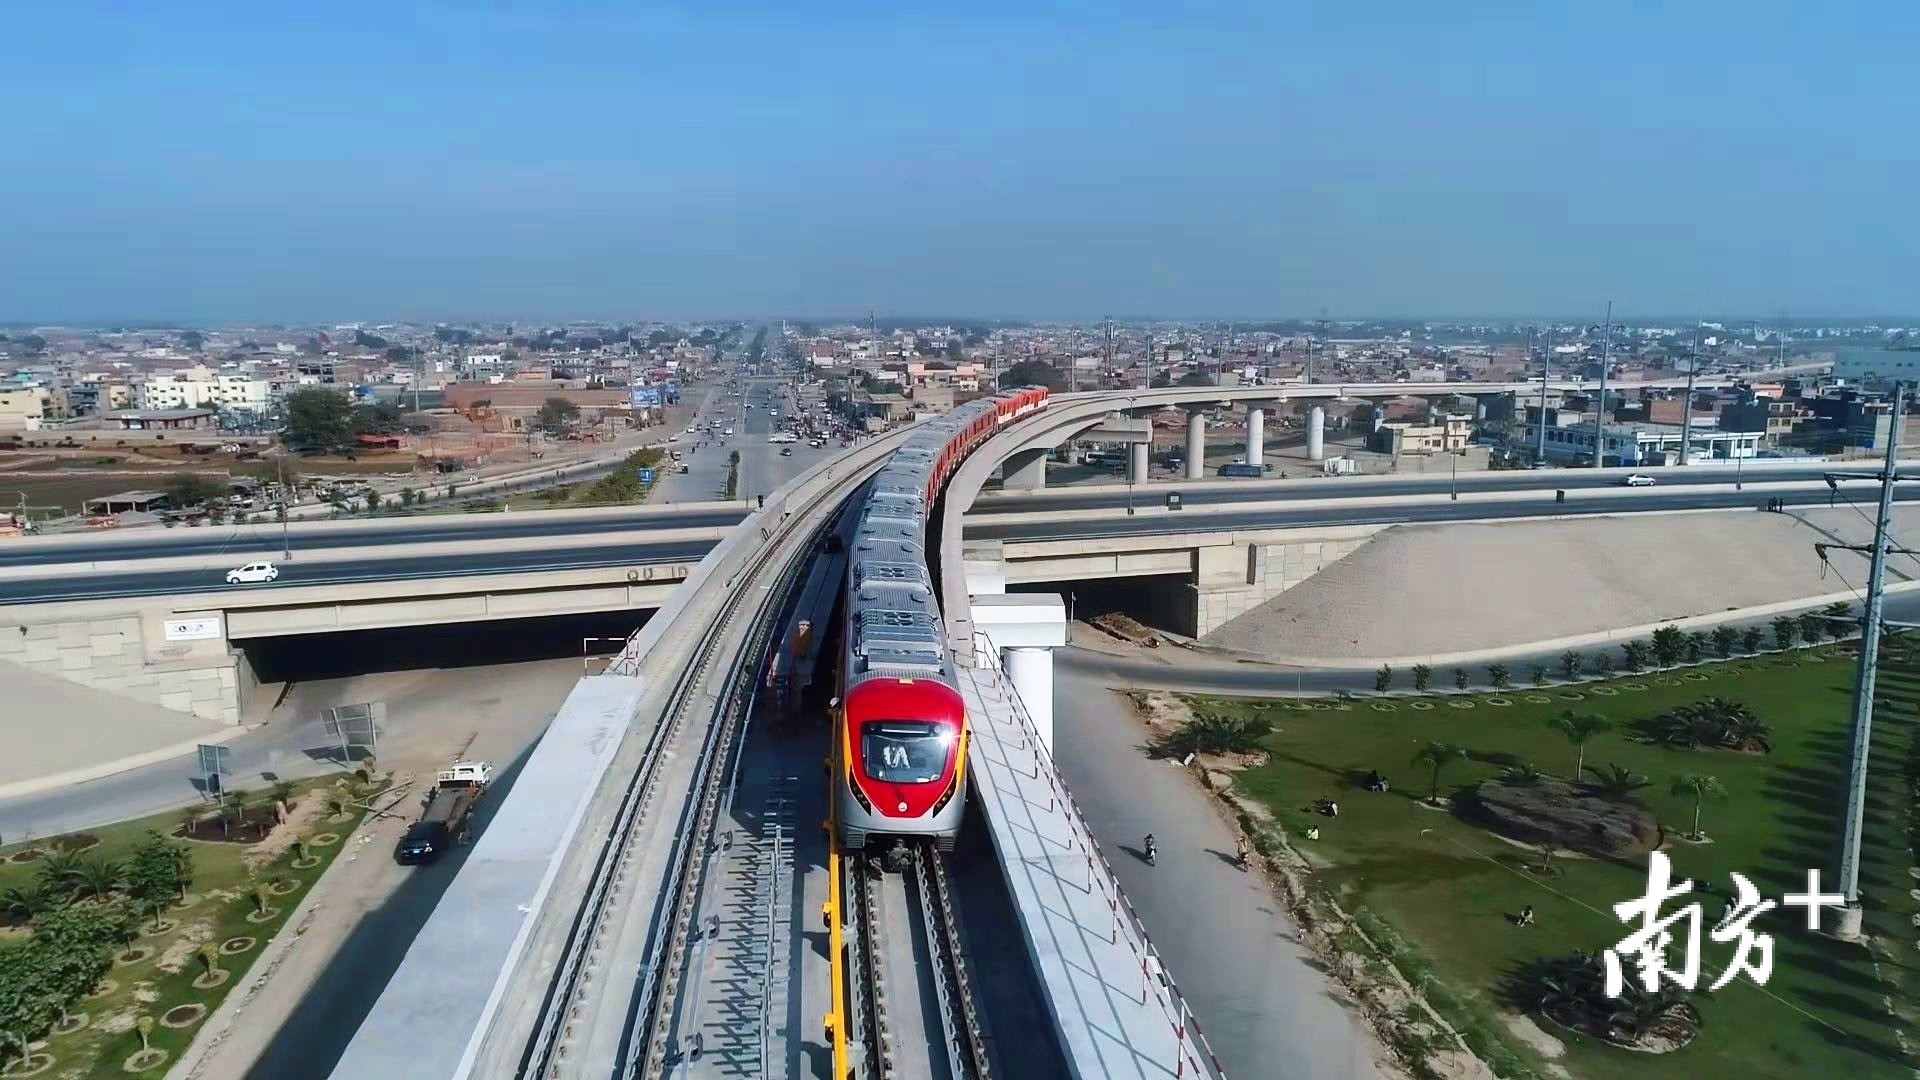 中国建造广州运营!巴基斯坦首条地铁开通